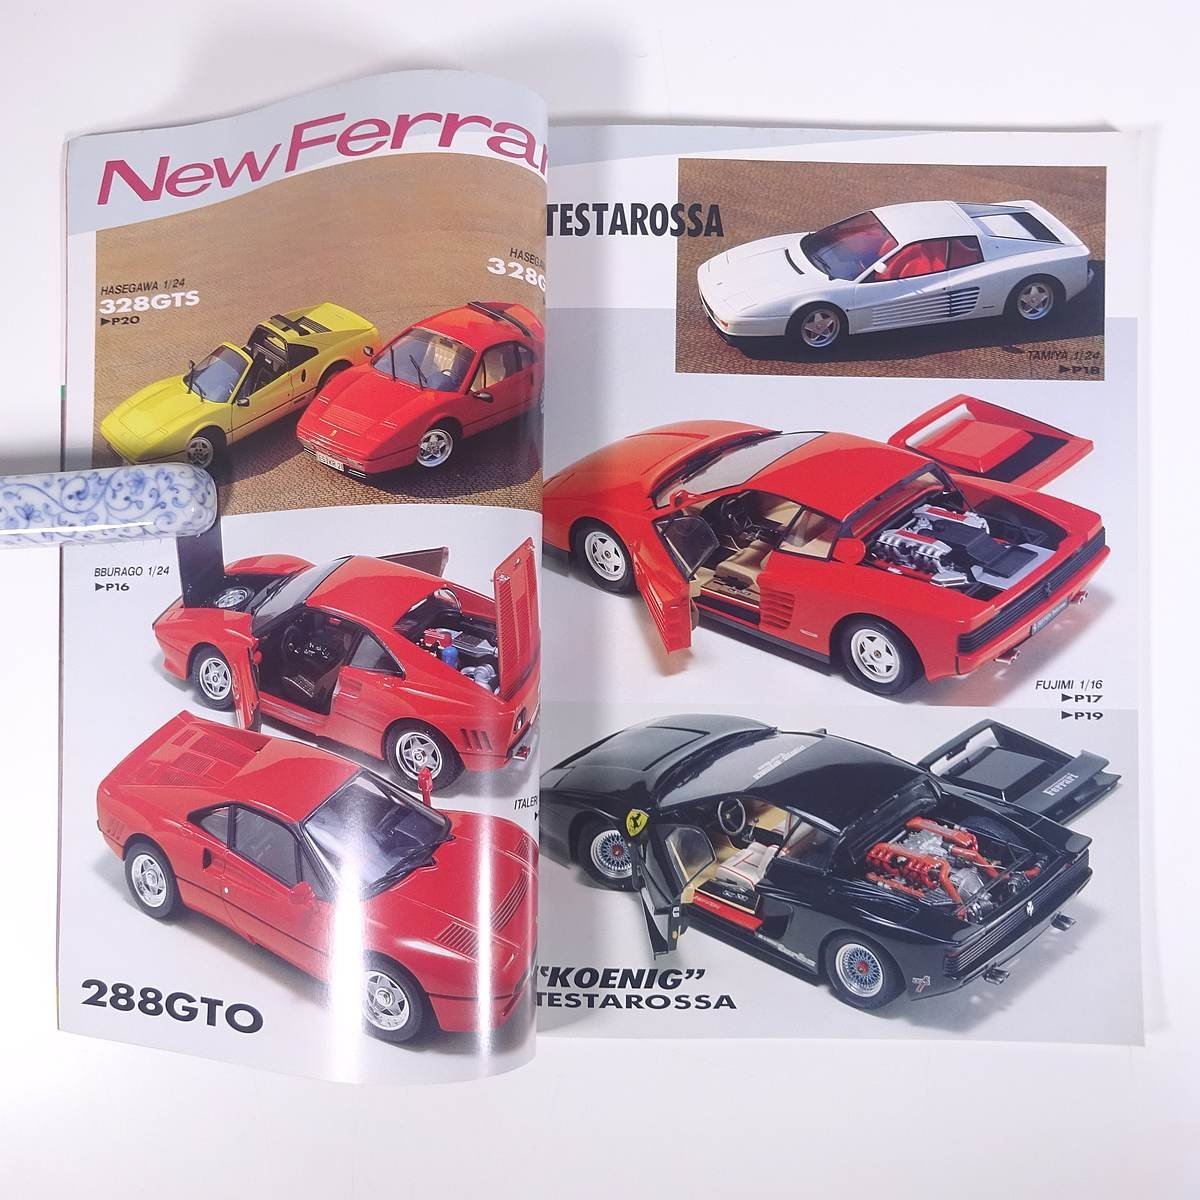 AUTO MODELING オートモデリング Vol.1 1987/3 モデルアート社 雑誌 模型 プラモデル 特集・フェラーリ テスタロッサからテスタロッサまで_画像6